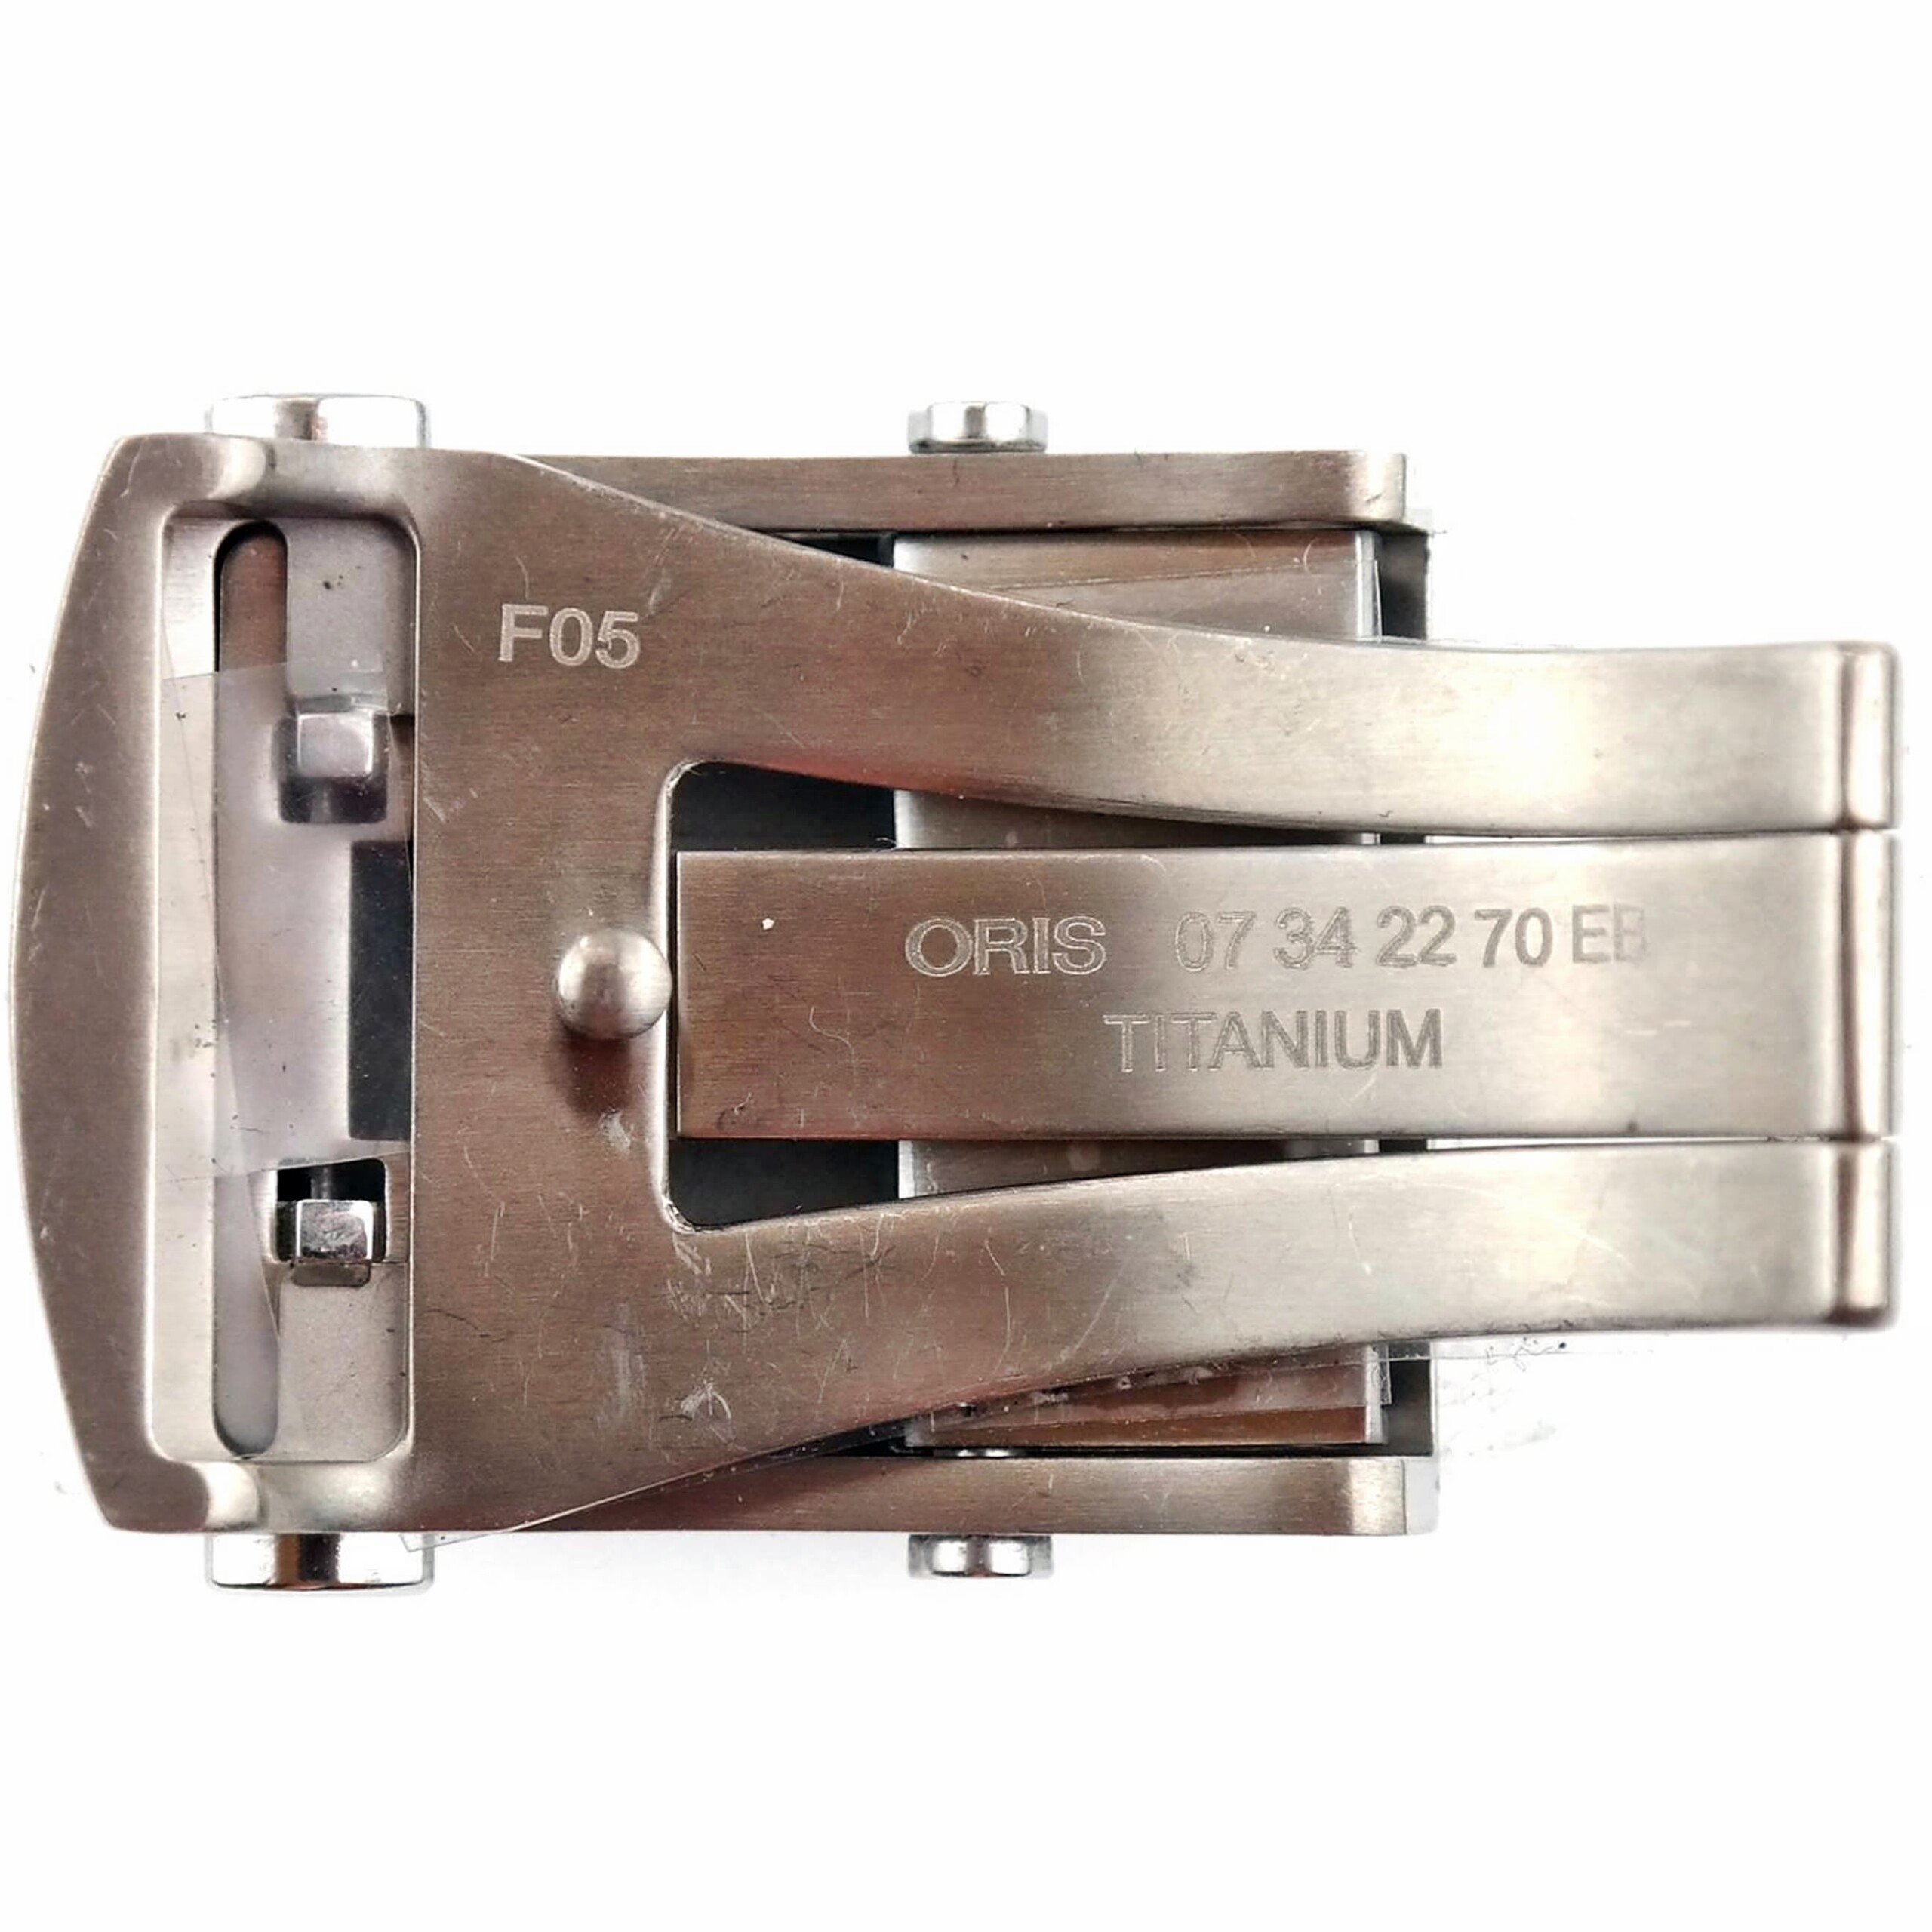 Authentic ORIS Aquis - Deployant Clasp - Buckle - 07342270EB - Titanium - 22 mm